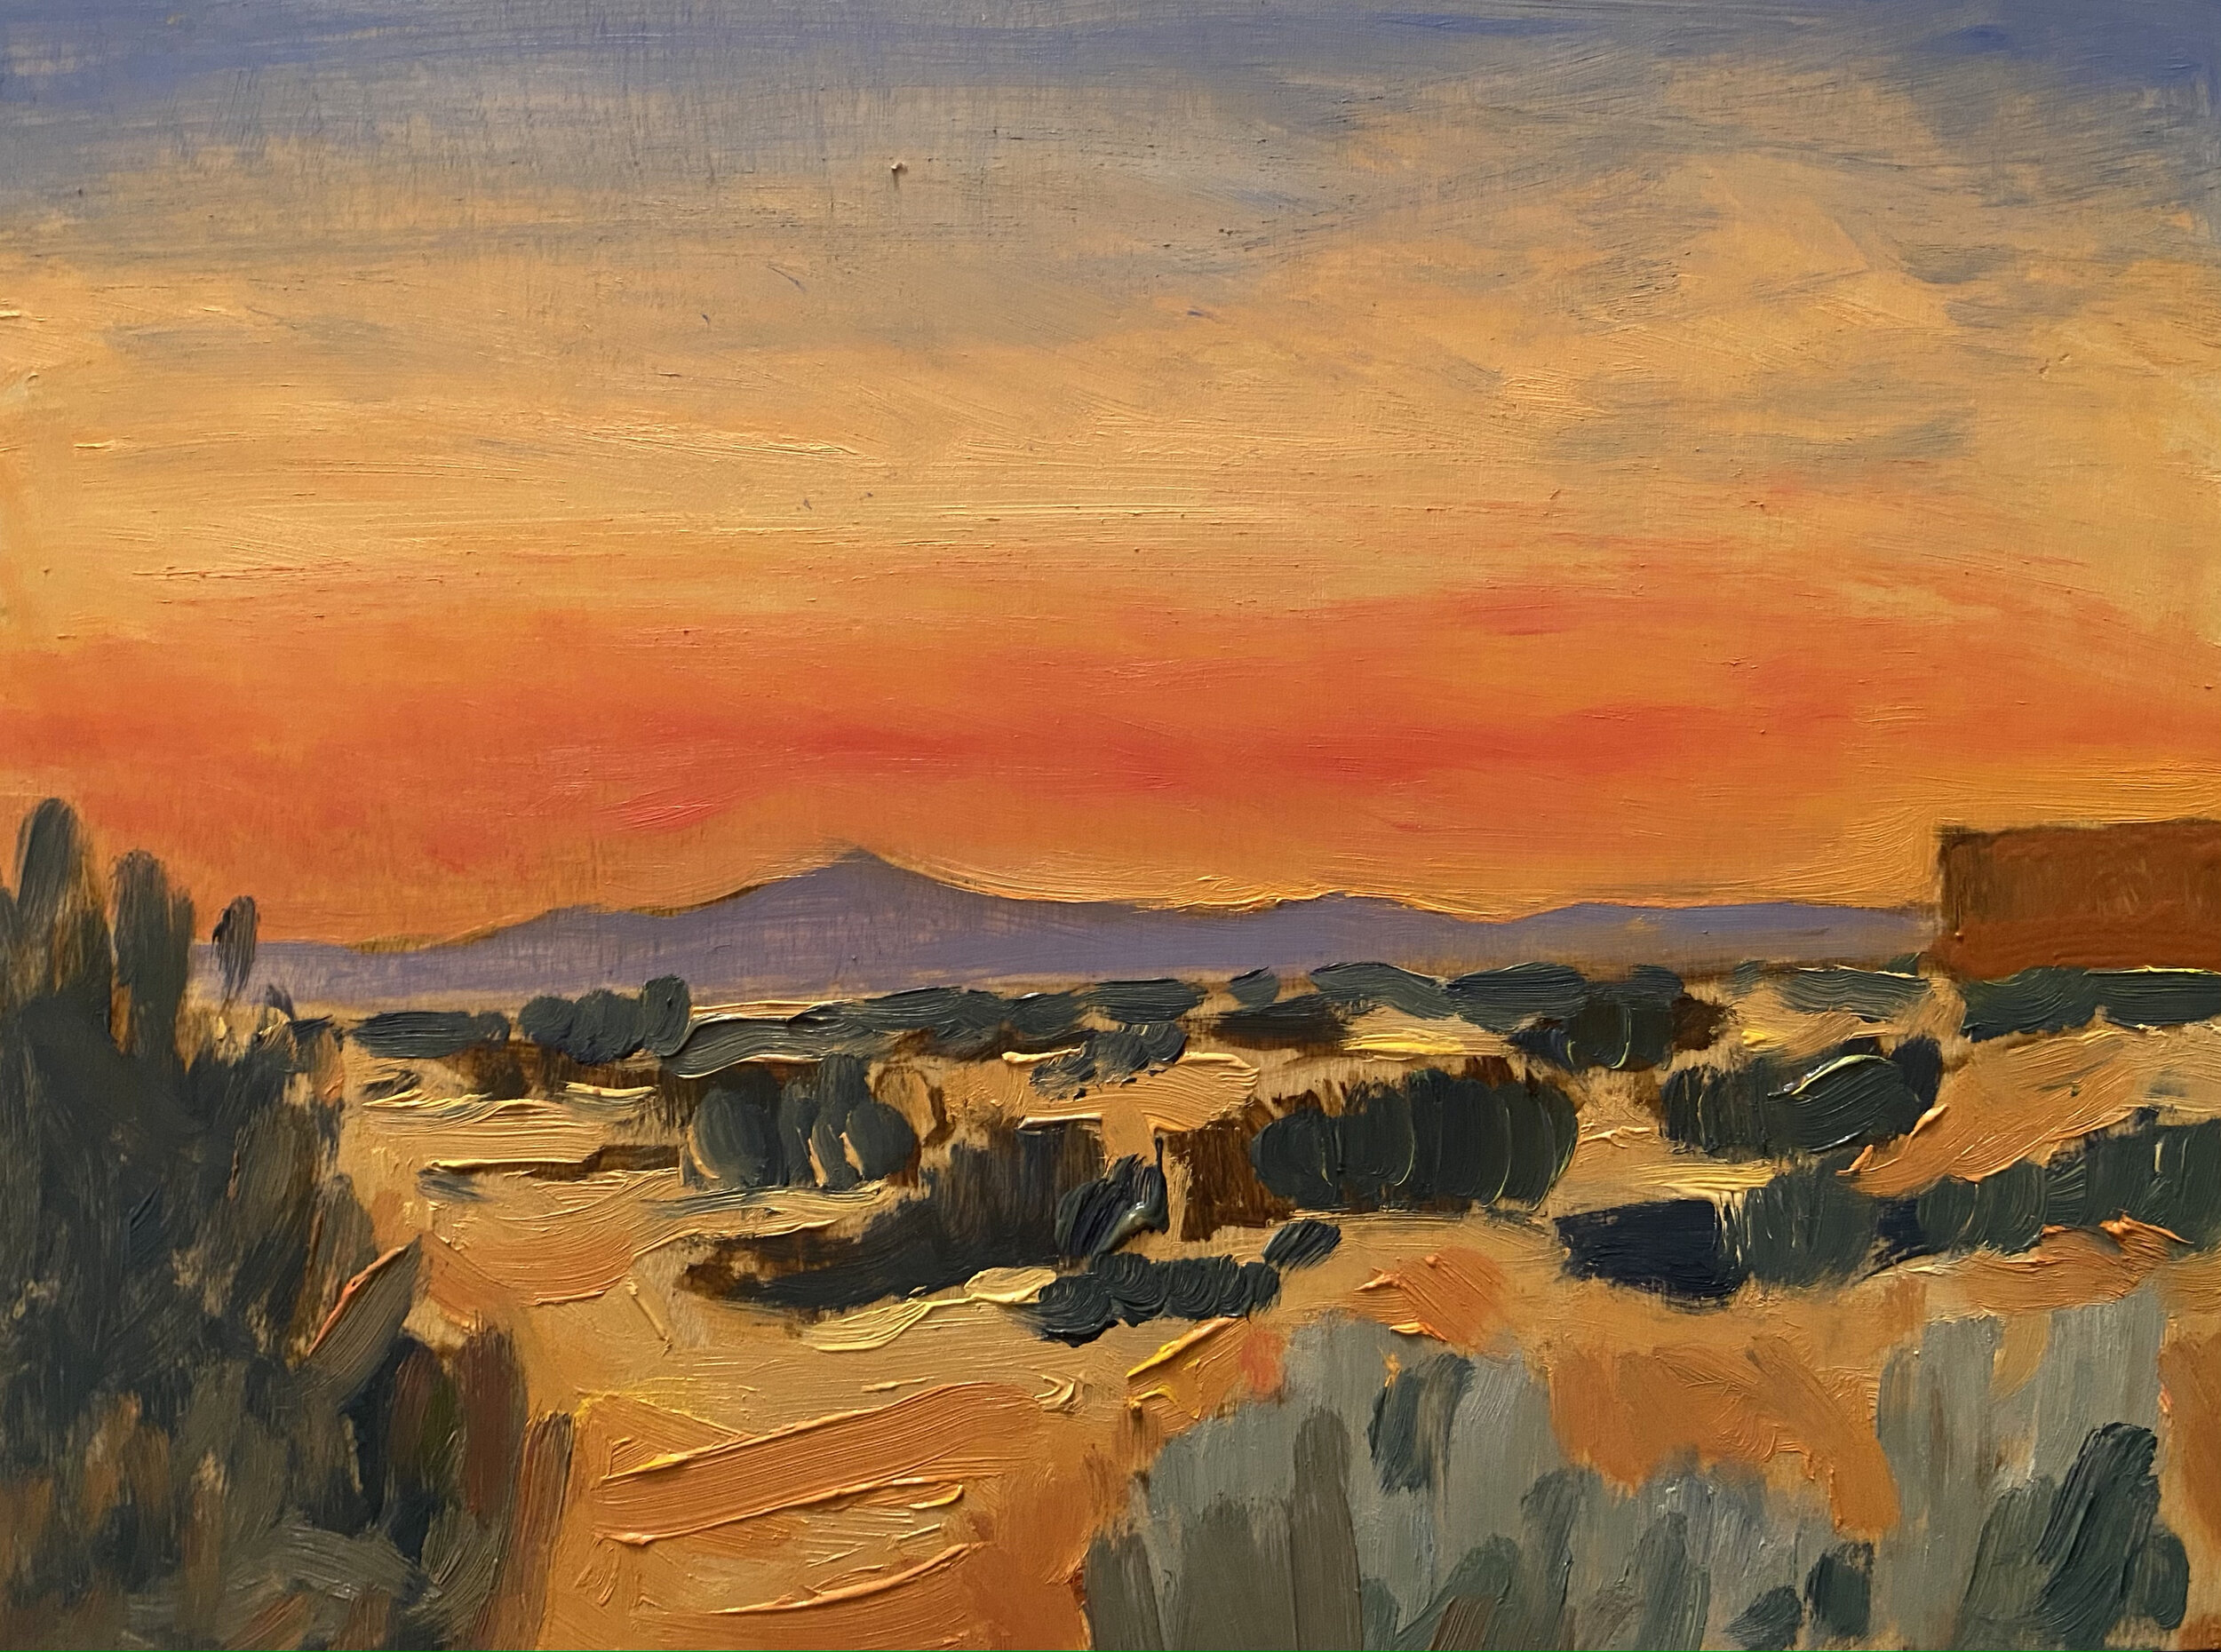 High Desert Sunset over Santa Fe